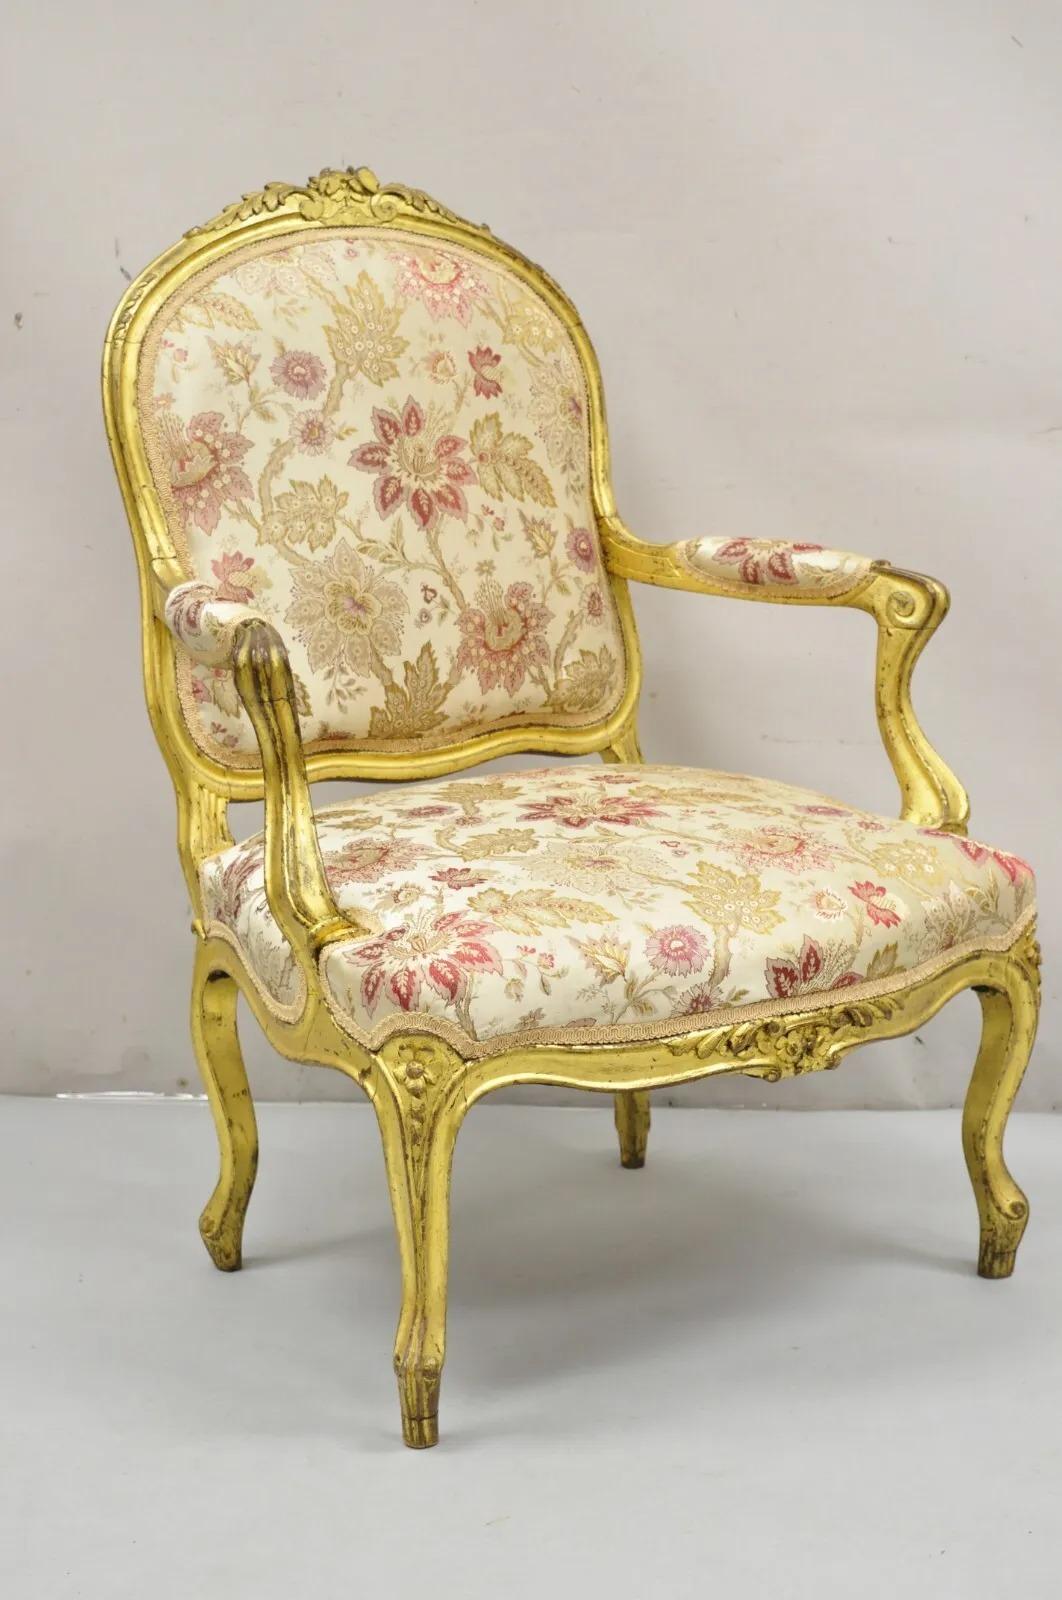 Ancienne chaise à accoudoirs en bois doré sculpté et fleuri de style Louis XV. L'article se caractérise par un cadre en bois sculpté et doré, une finition dorée vieillie et un rembourrage à imprimé floral. Circa 19ème siècle Dimensions : 39